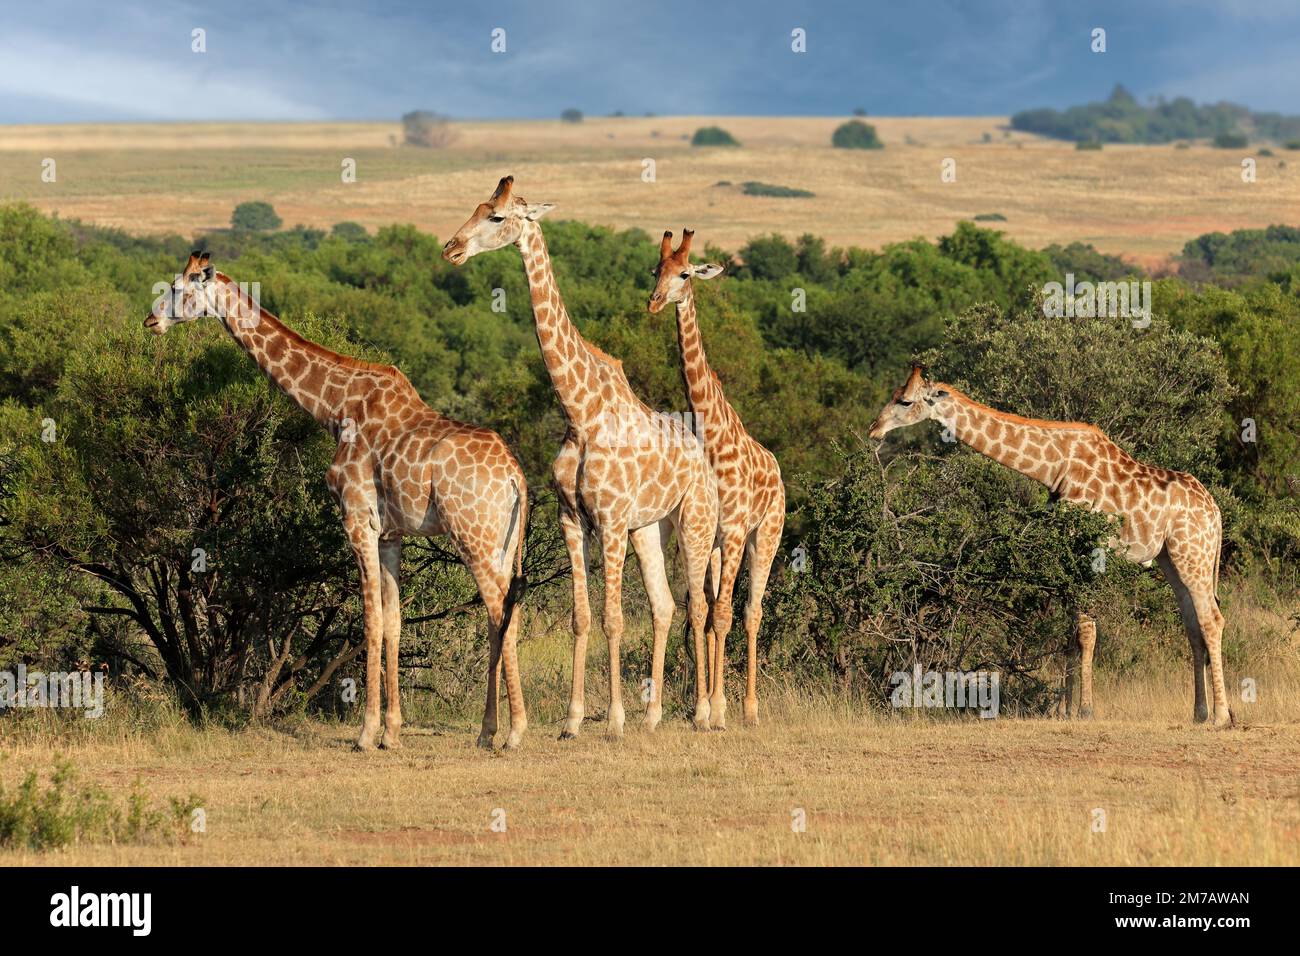 Famille de girafes (Giraffa camelopardalis) dans un habitat naturel, Afrique du Sud Banque D'Images